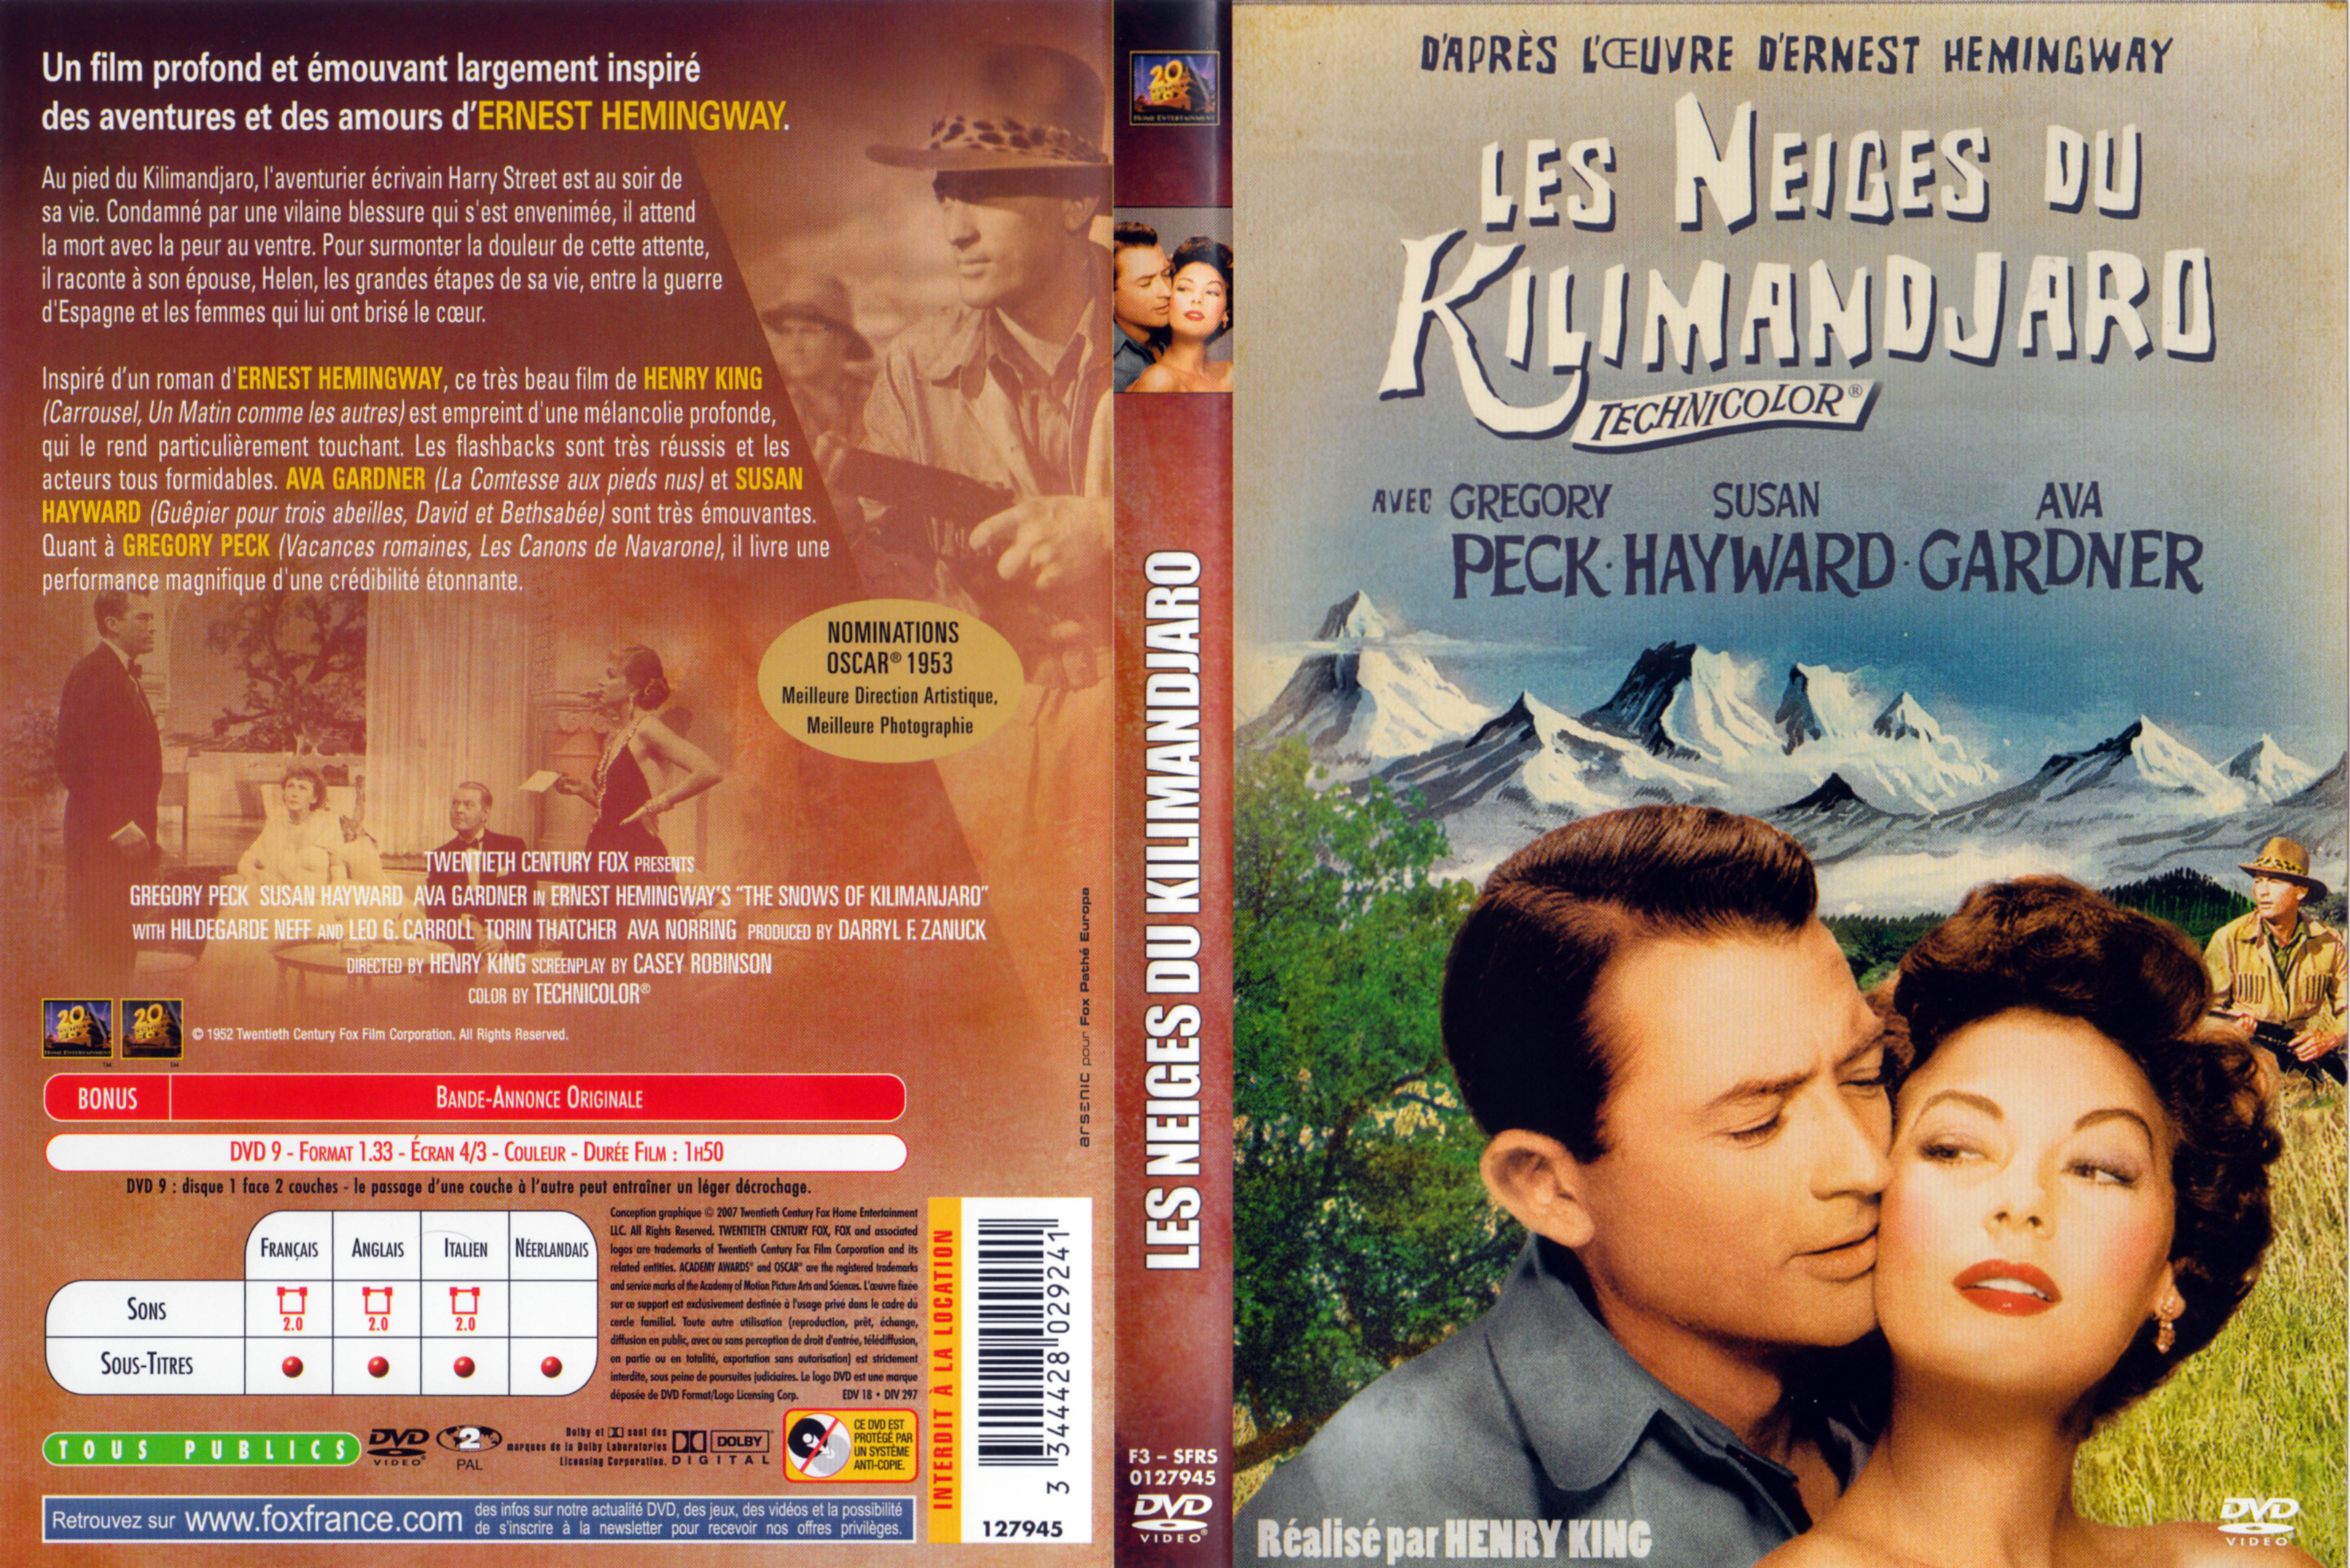 Jaquette DVD Les neiges du kilimandjaro v3